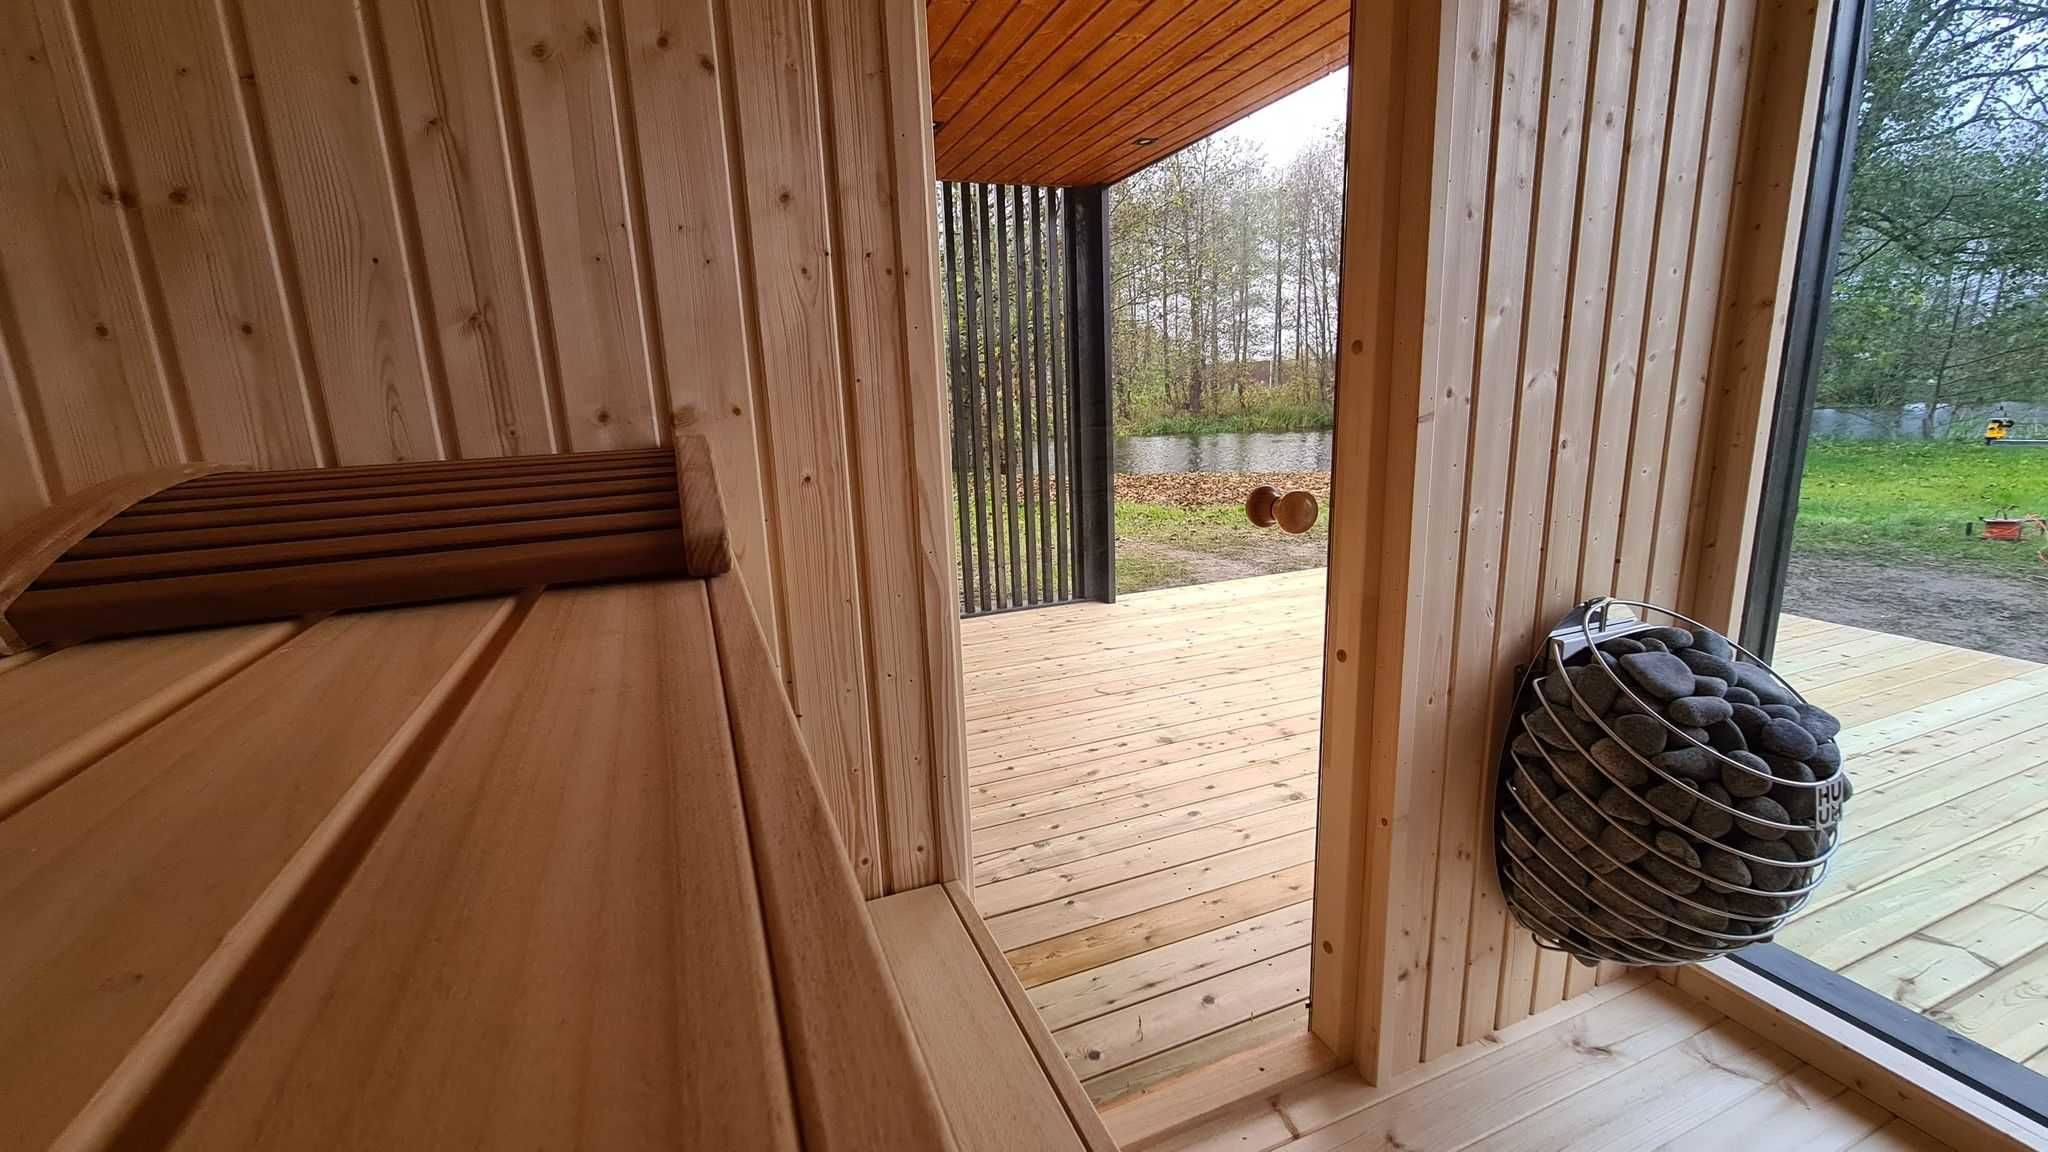 Sauna fińska, sucha, zewnętrzna, ogrodowa, SPA, beczka, model OSLO